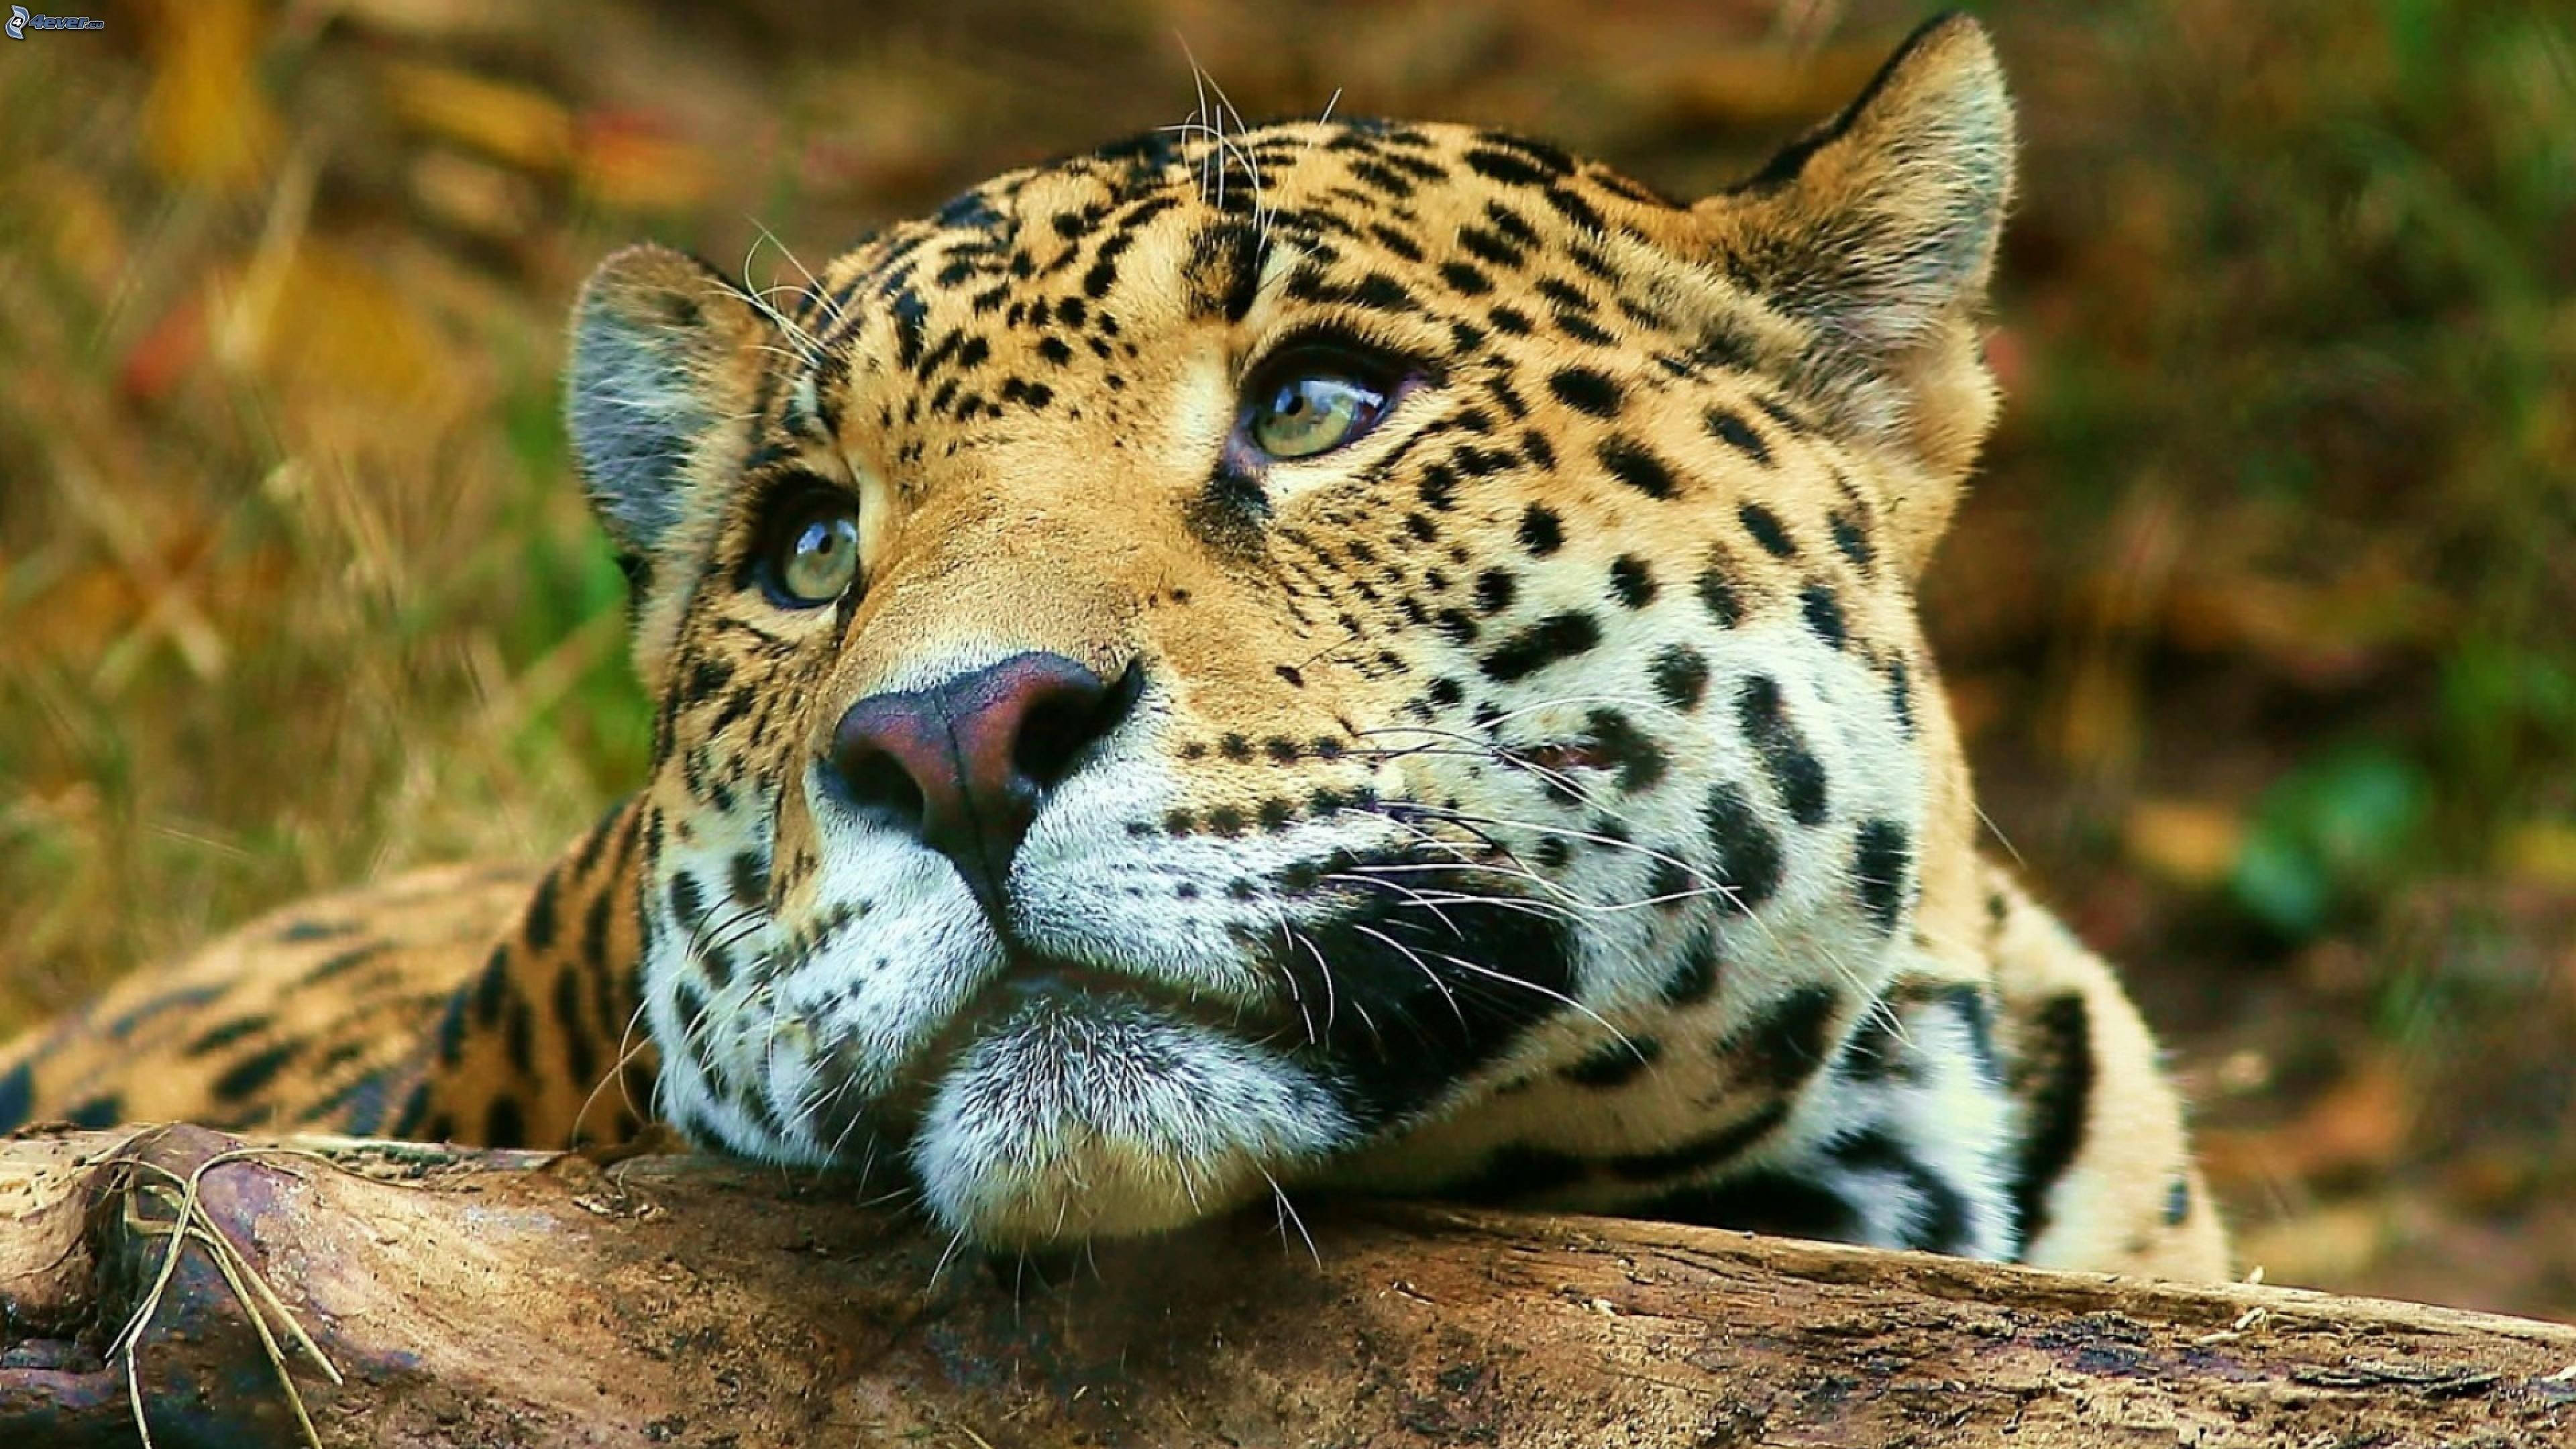 Big jpg image. Дальневосточный леопард. Дальневосточный леопард морда. Дикие звери. Красивые звери.